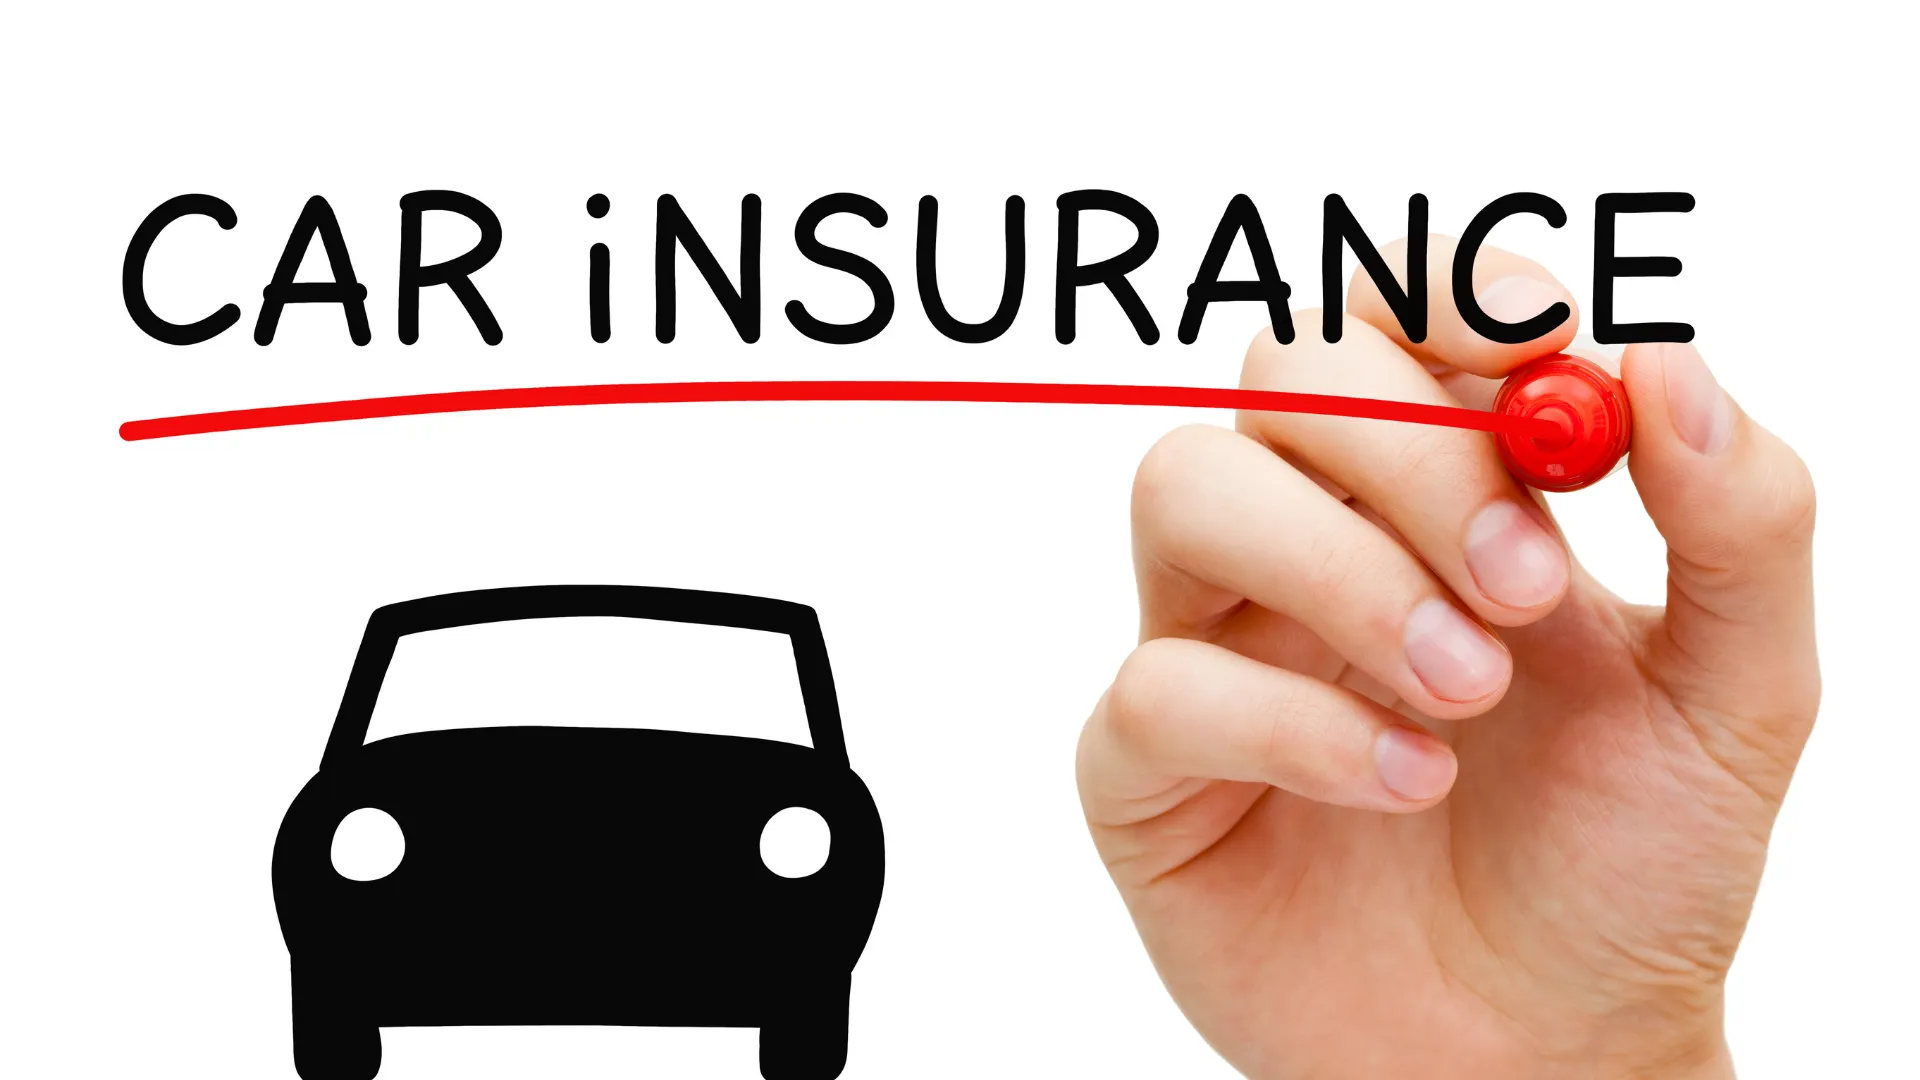 교통법규를 위반한 경우, 자동차 보험에 미치는 영향은?